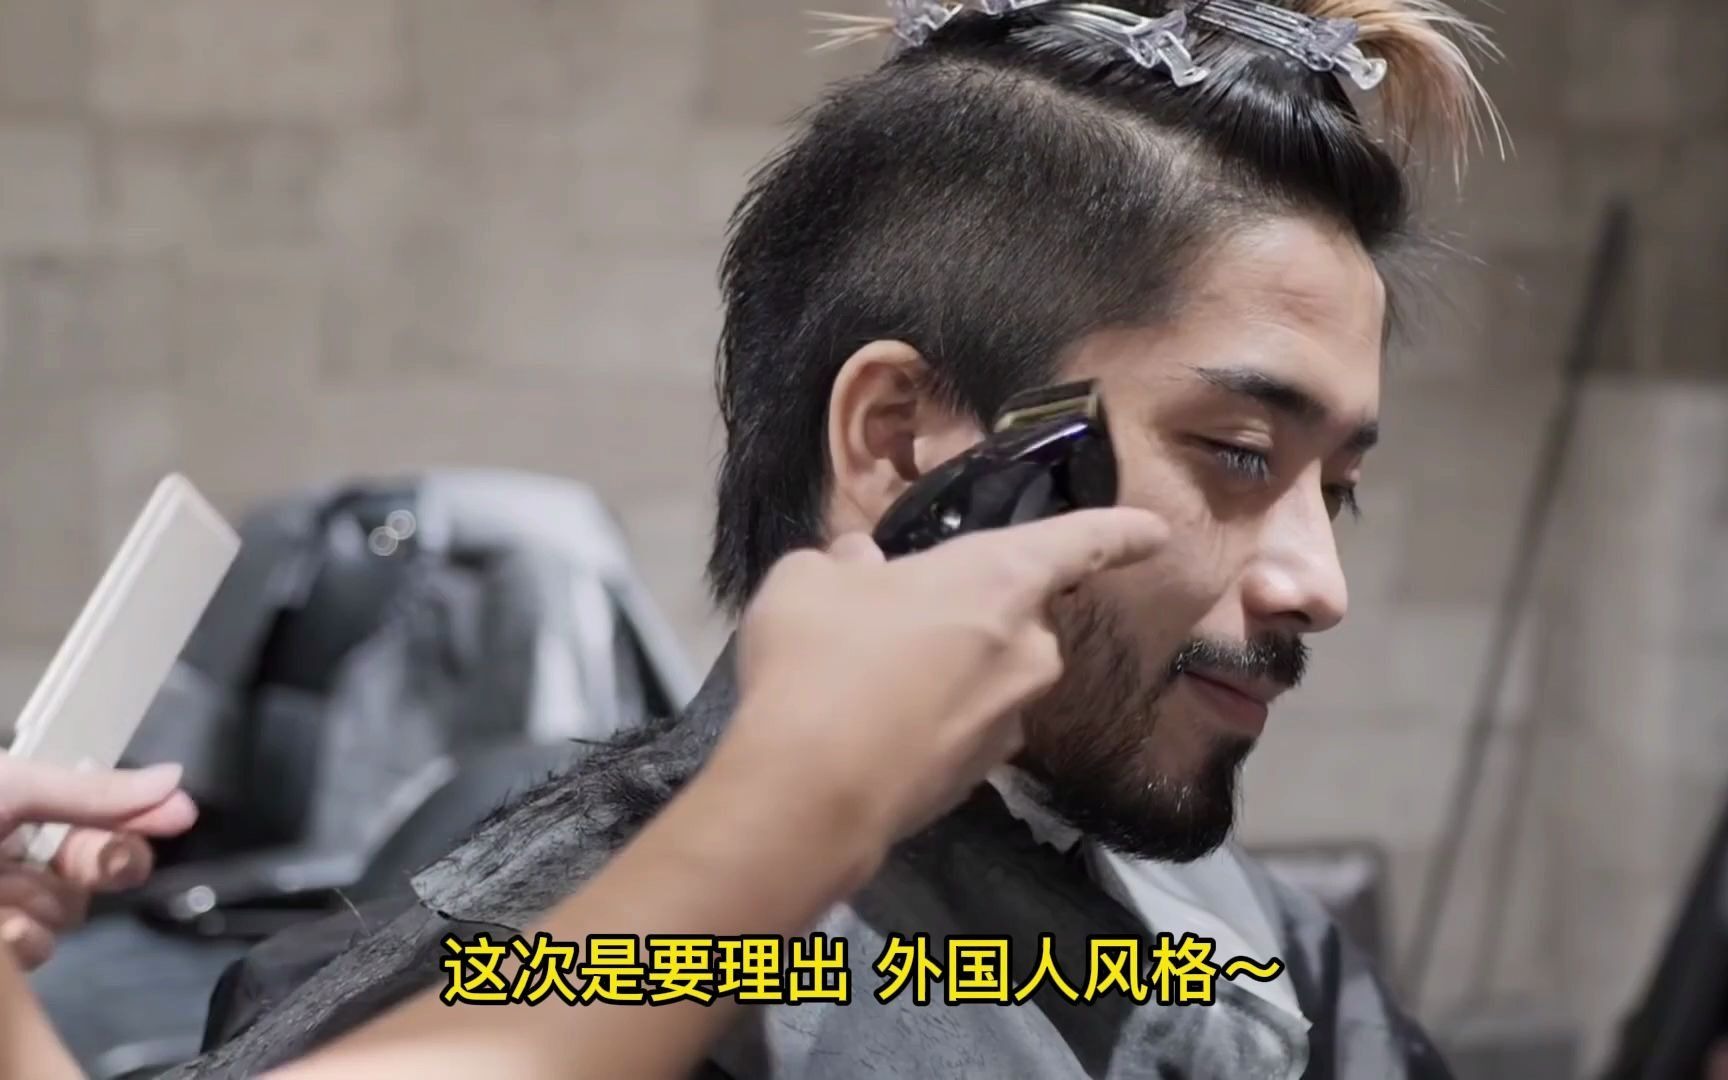 男生理发，barber shop，日本理发，男生发型，这一集 日本当红理发店 kingsman tokyo barbershop ，看理发，放松一下吧